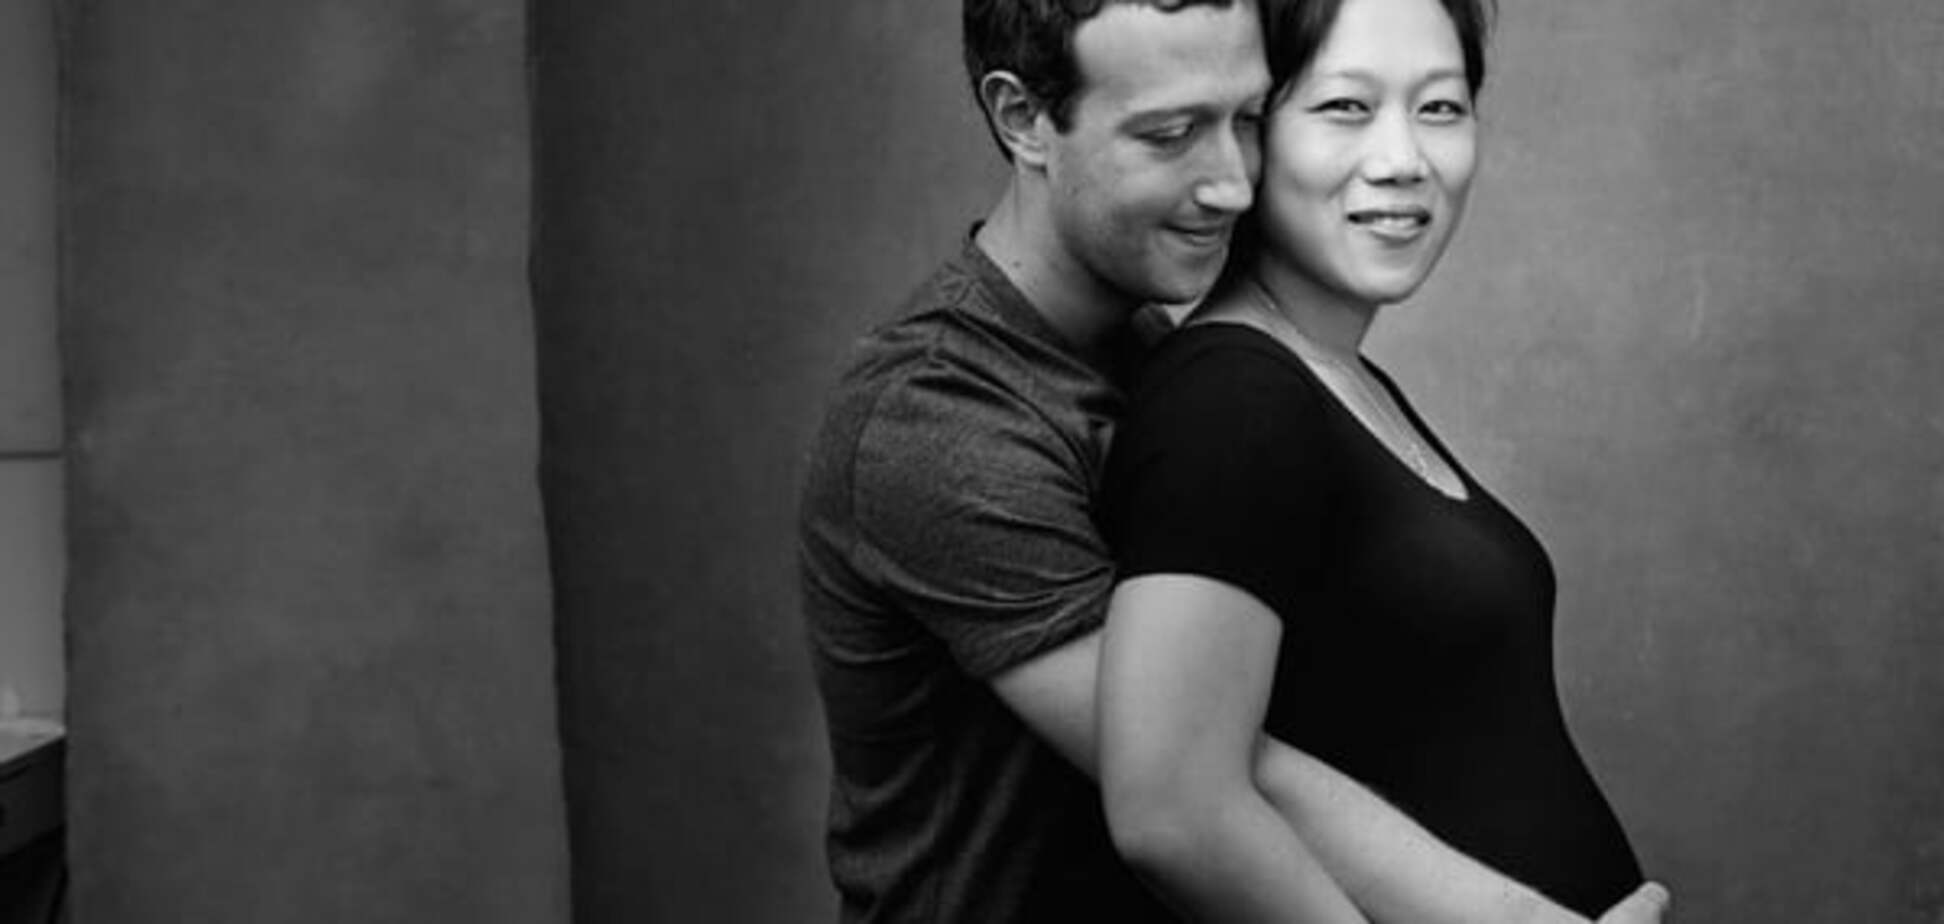 Цукерберг показав зворушливе фото з вагітною дружиною